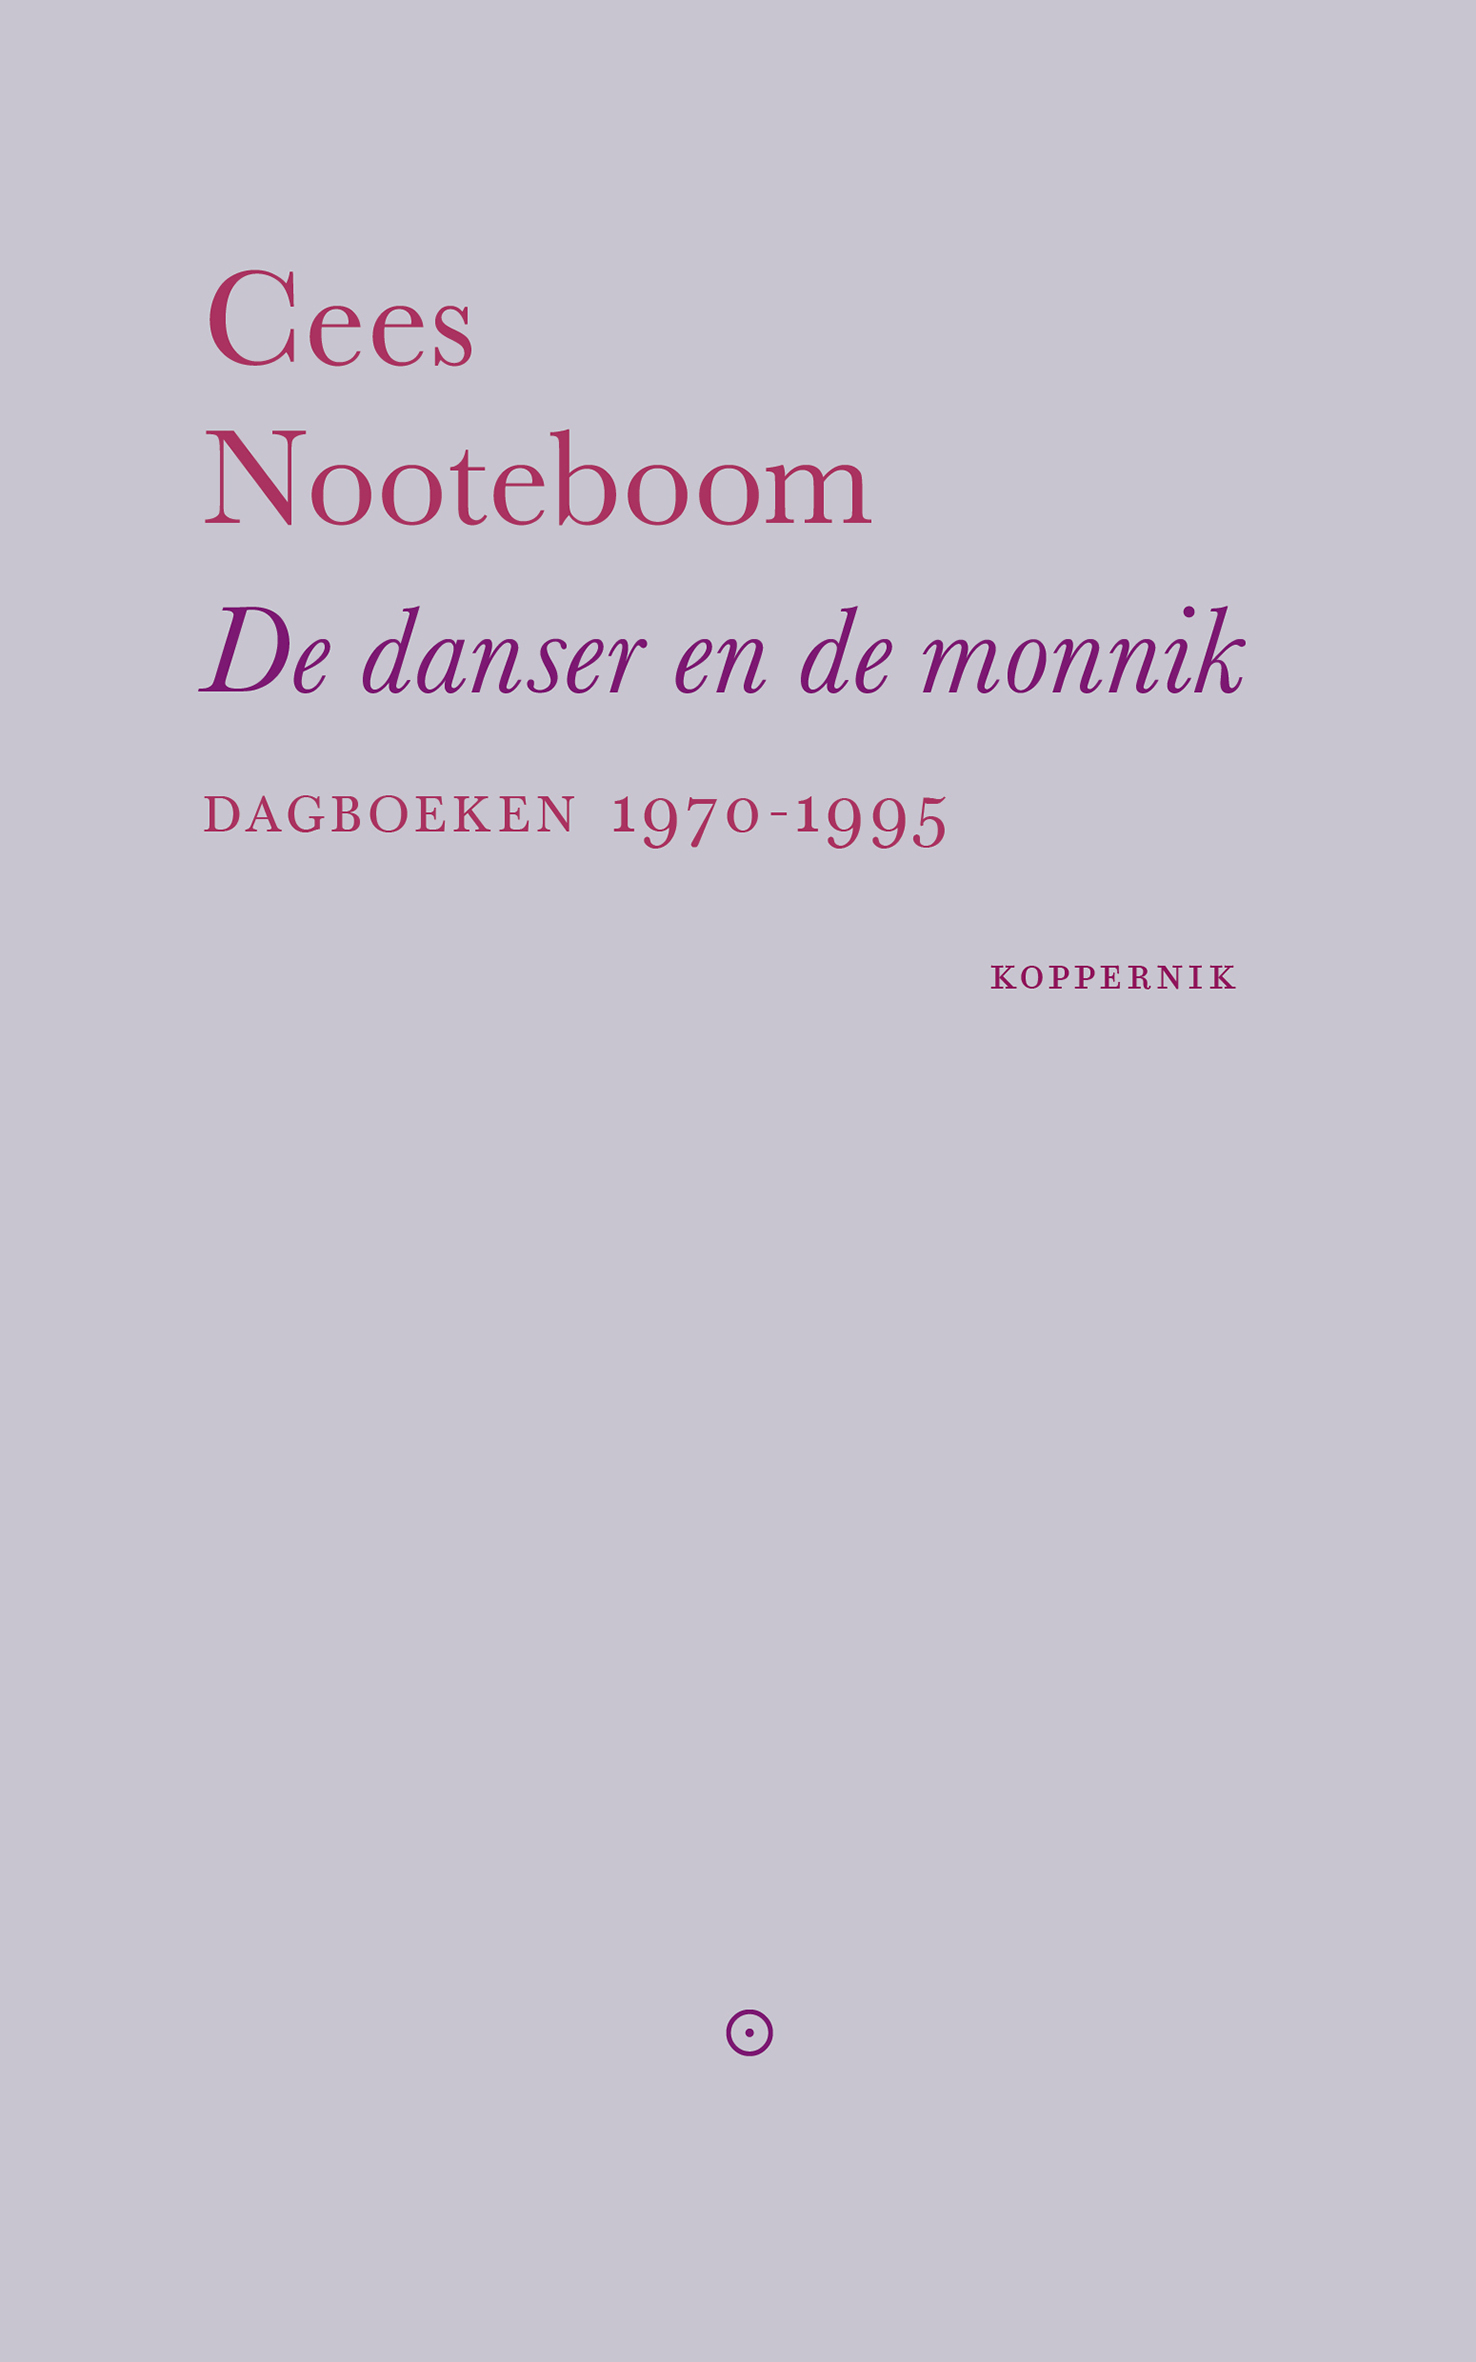 De danser en de monnik. Dagboeken 1970-1995 – Cees Nooteboom